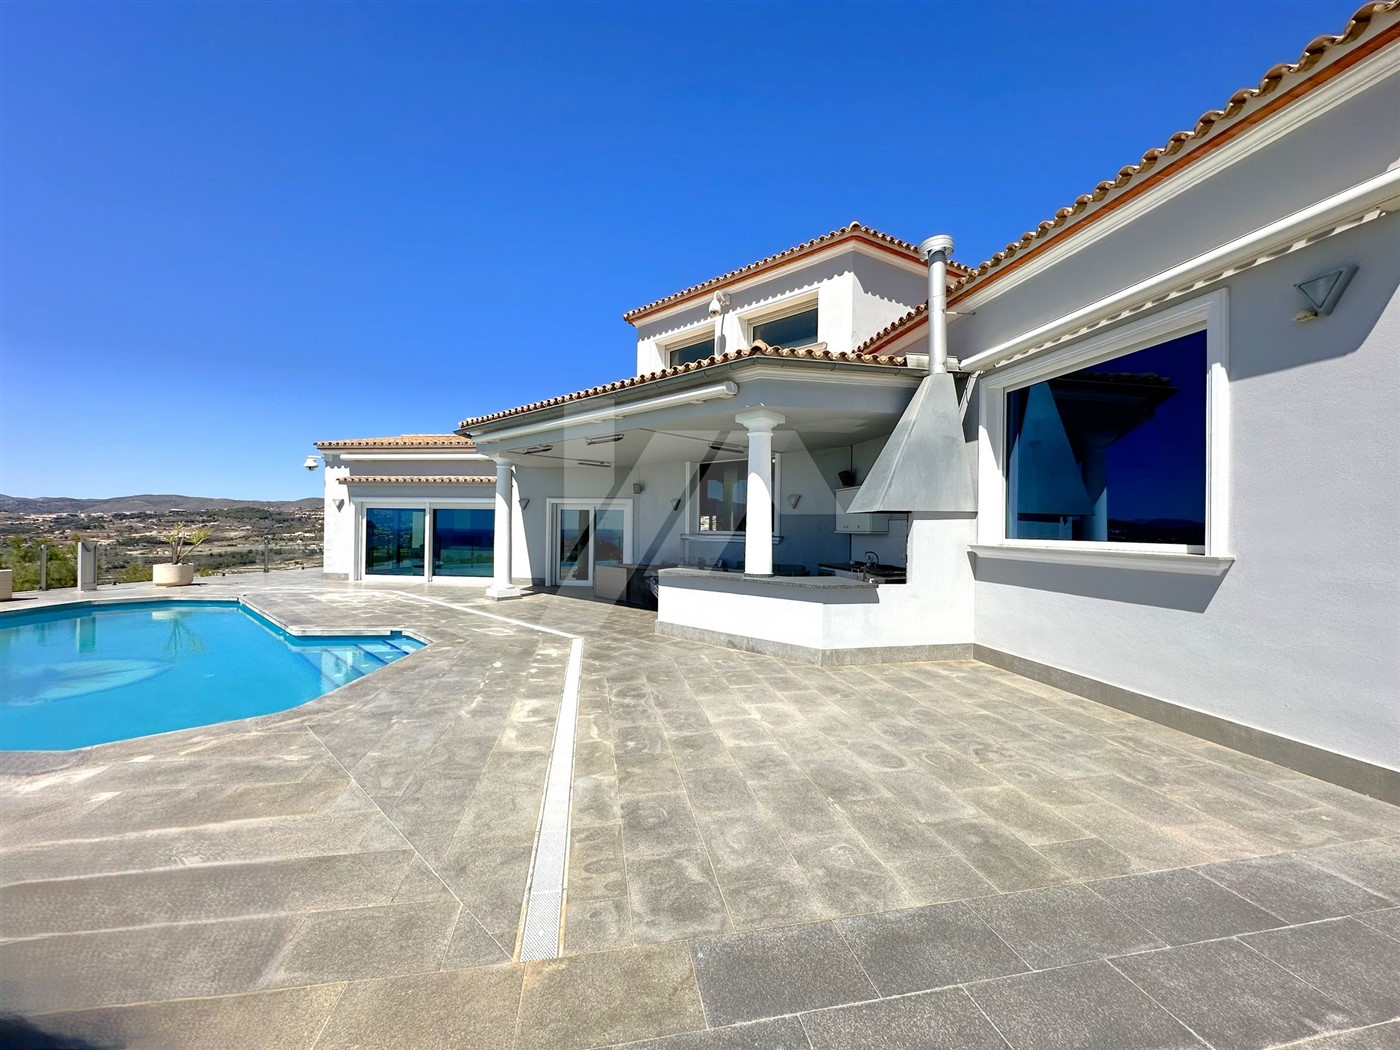 Villa mit Panoramablick auf das Meer zum Verkauf in Moraira, Costa Blanca.